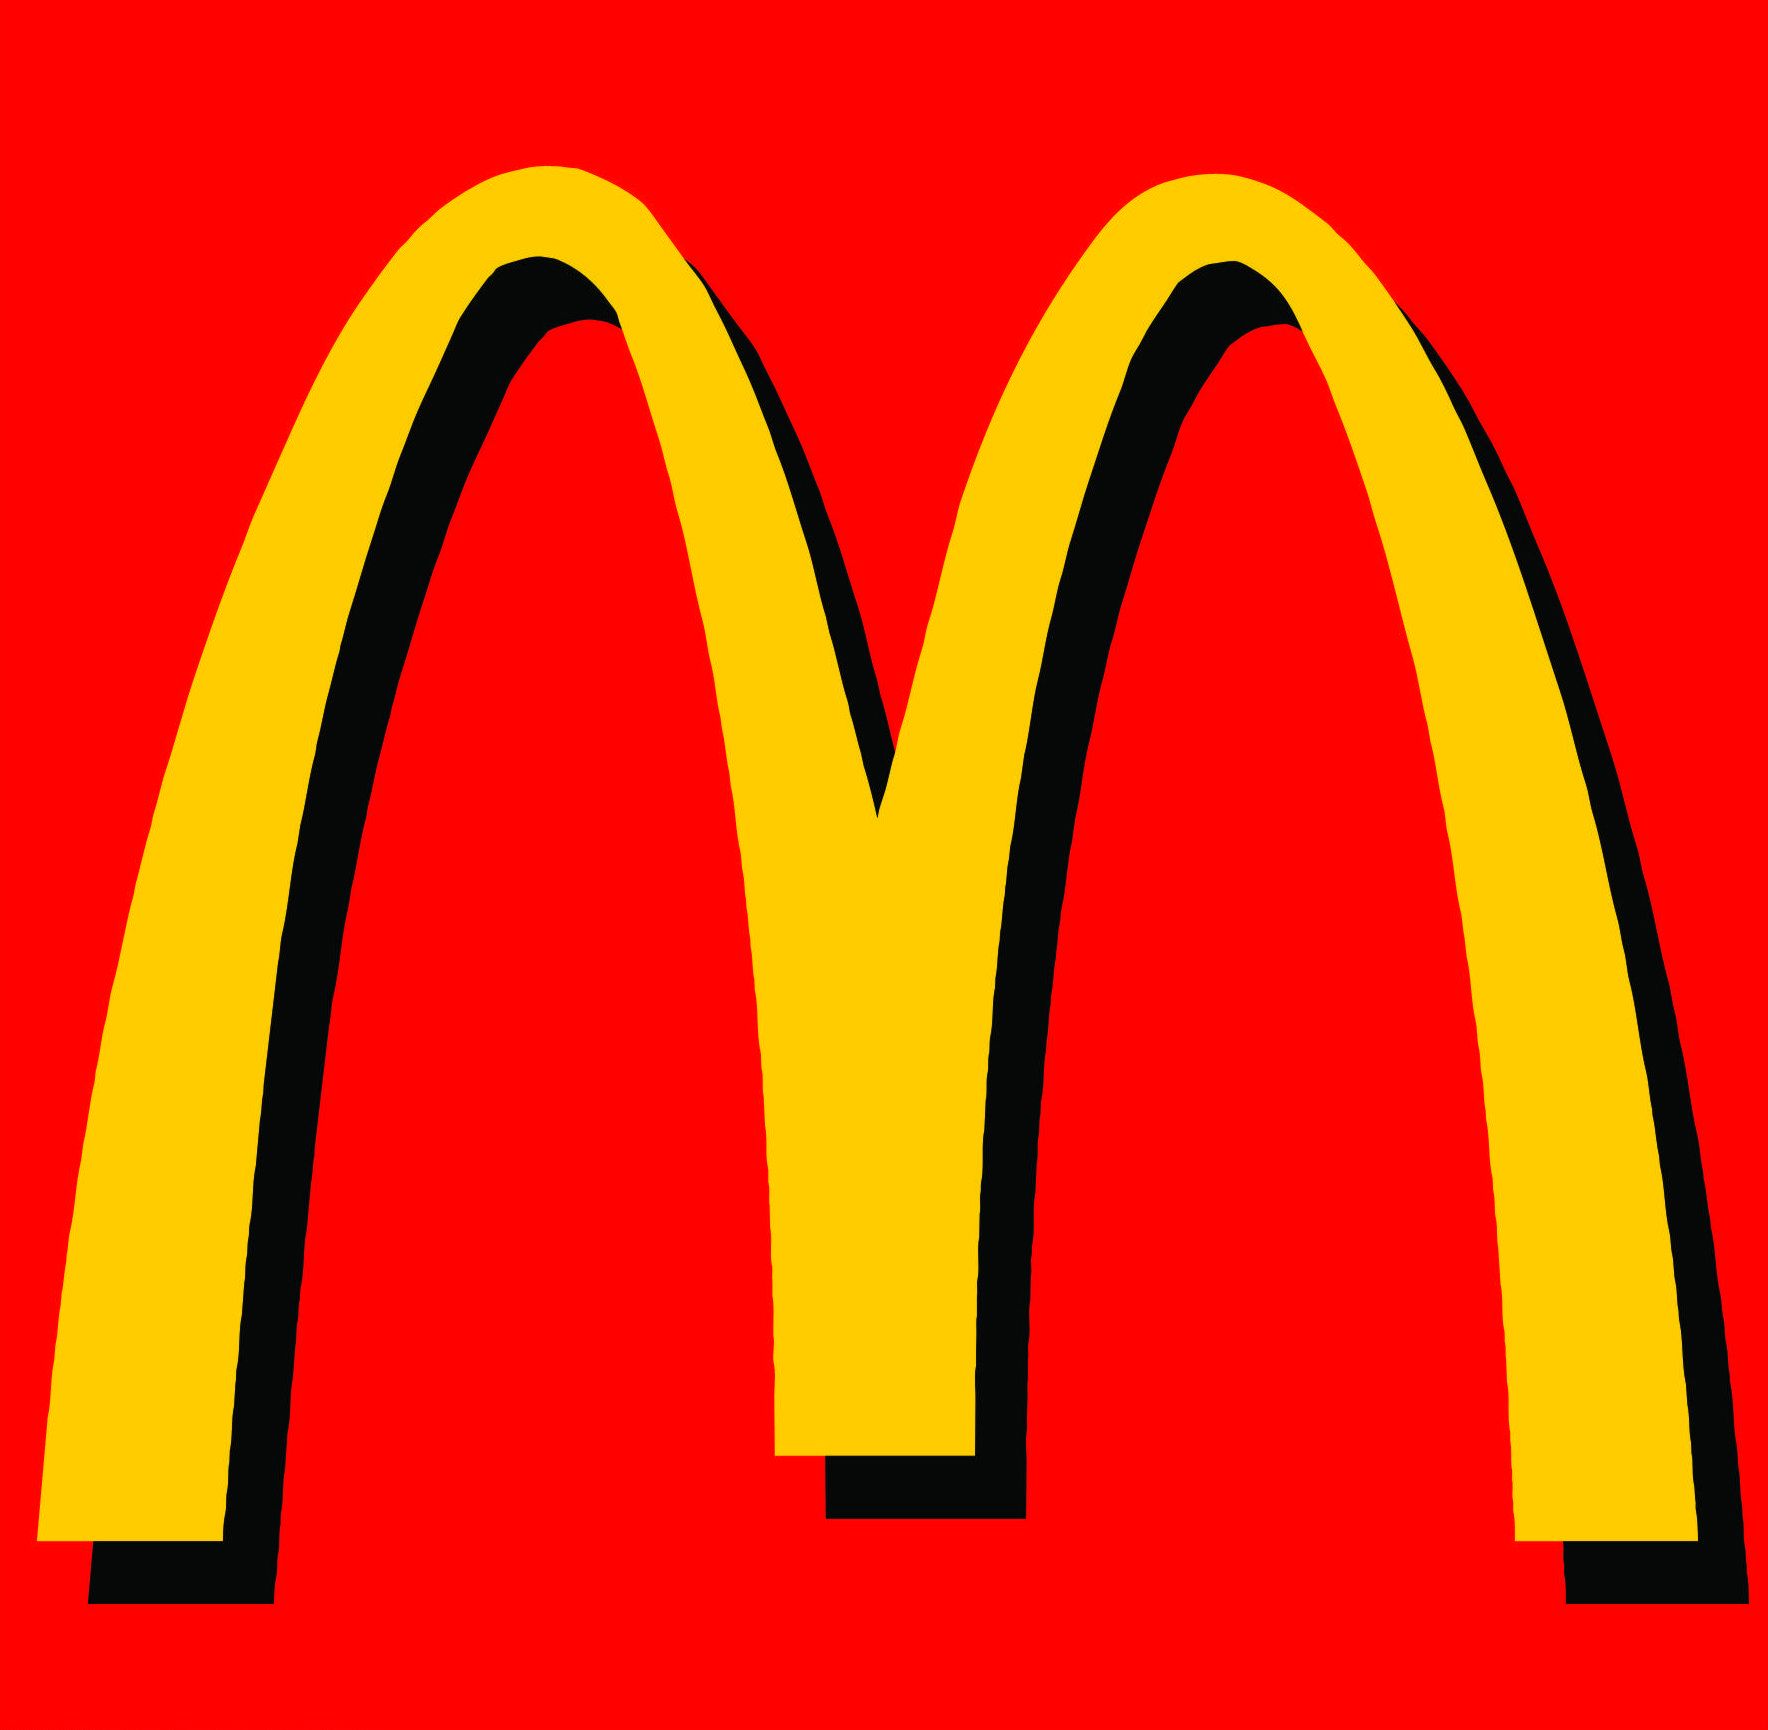 Mcdonalds Logos HD Wallpaper Image And